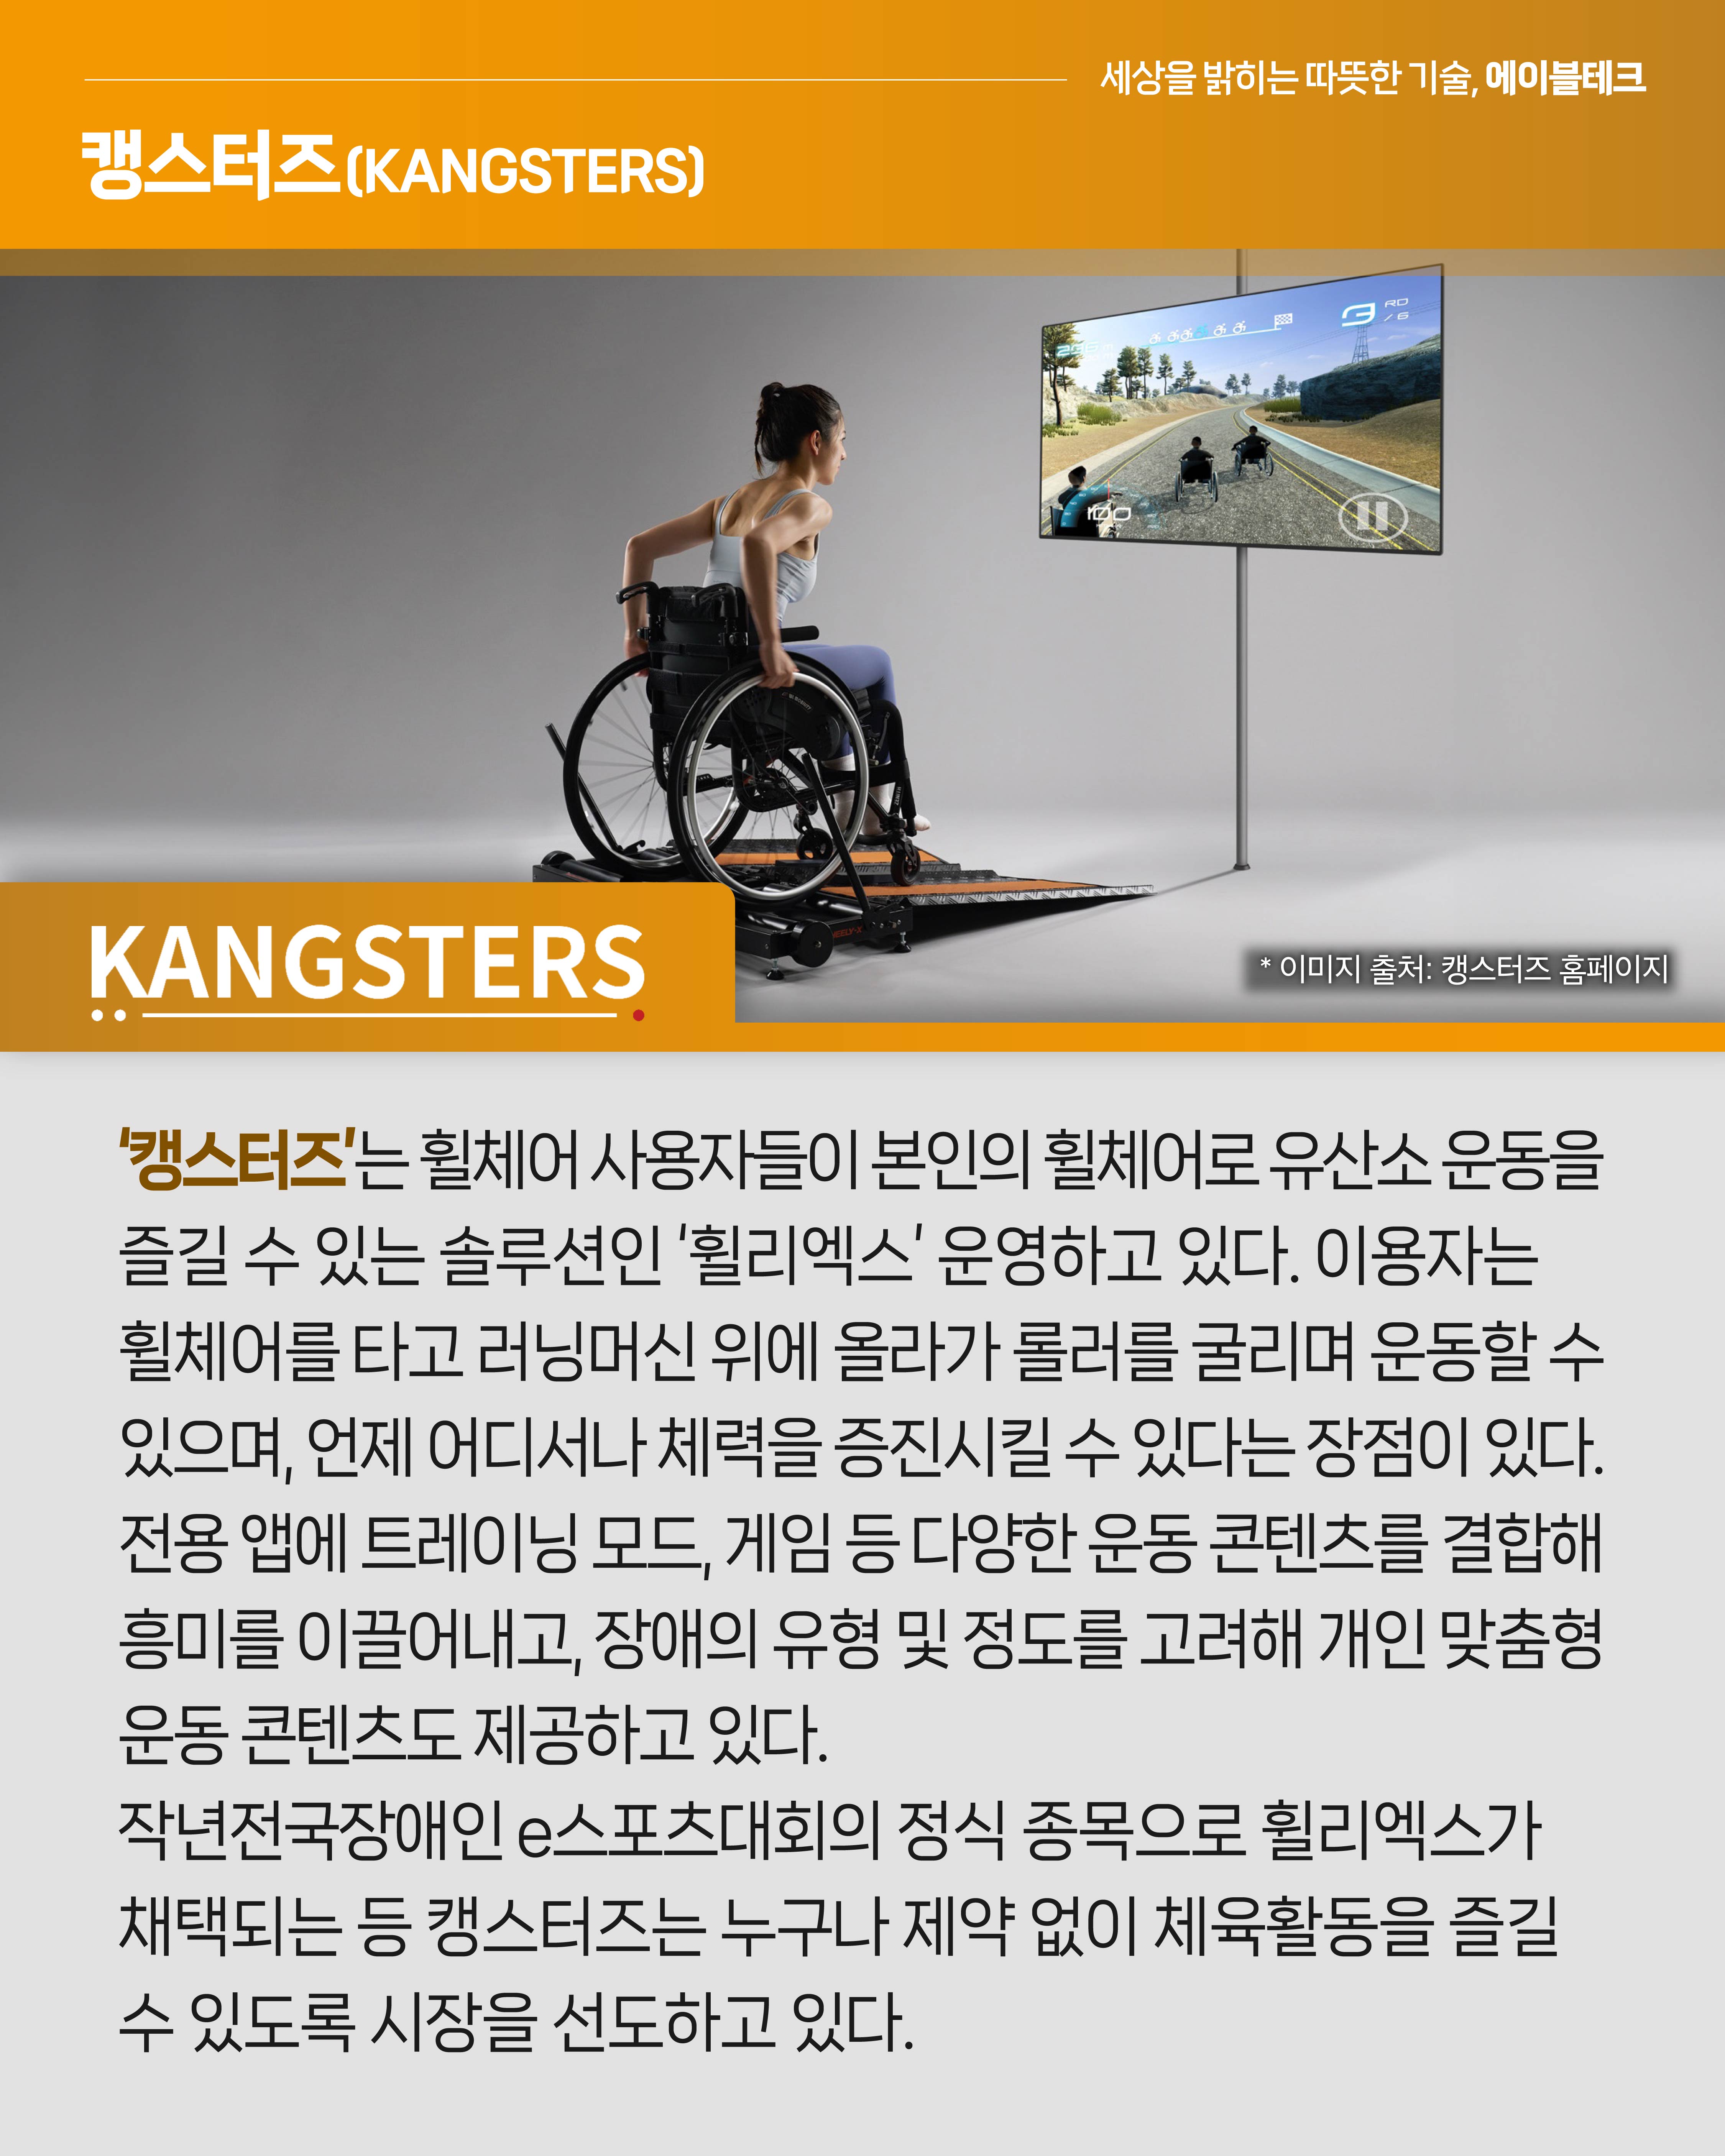 <캥스터즈>
‘캥스터즈’는 휠체어 사용자들이 본인의 휠체어로 유산소 운동을 즐길 수 있는 솔루션인 ‘휠리엑스’ 운영하고 있다. 이용자는 휠체어를 타고 러닝머신 위에 올라가 롤러를 굴리며 운동할 수 있으며, 언제 어디서나 체력을 증진시킬 수 있다는 장점이 있다. 전용 앱에 트레이닝 모드, 게임 등의 다양한 운동 콘텐츠를 결합해 흥미를 이끌어내고, 장애의 유형 및 정도를 고려해 개인 맞춤형 운동 콘텐츠도 제공하고 있다. 지난해 전국장애인e스포츠대회의 정식 종목으로 휠리엑스가 채택되는 등 캥스터즈는 누구나 제약 없이 체육활동을 즐길 수 있도록 시장을 선도하고 있다.